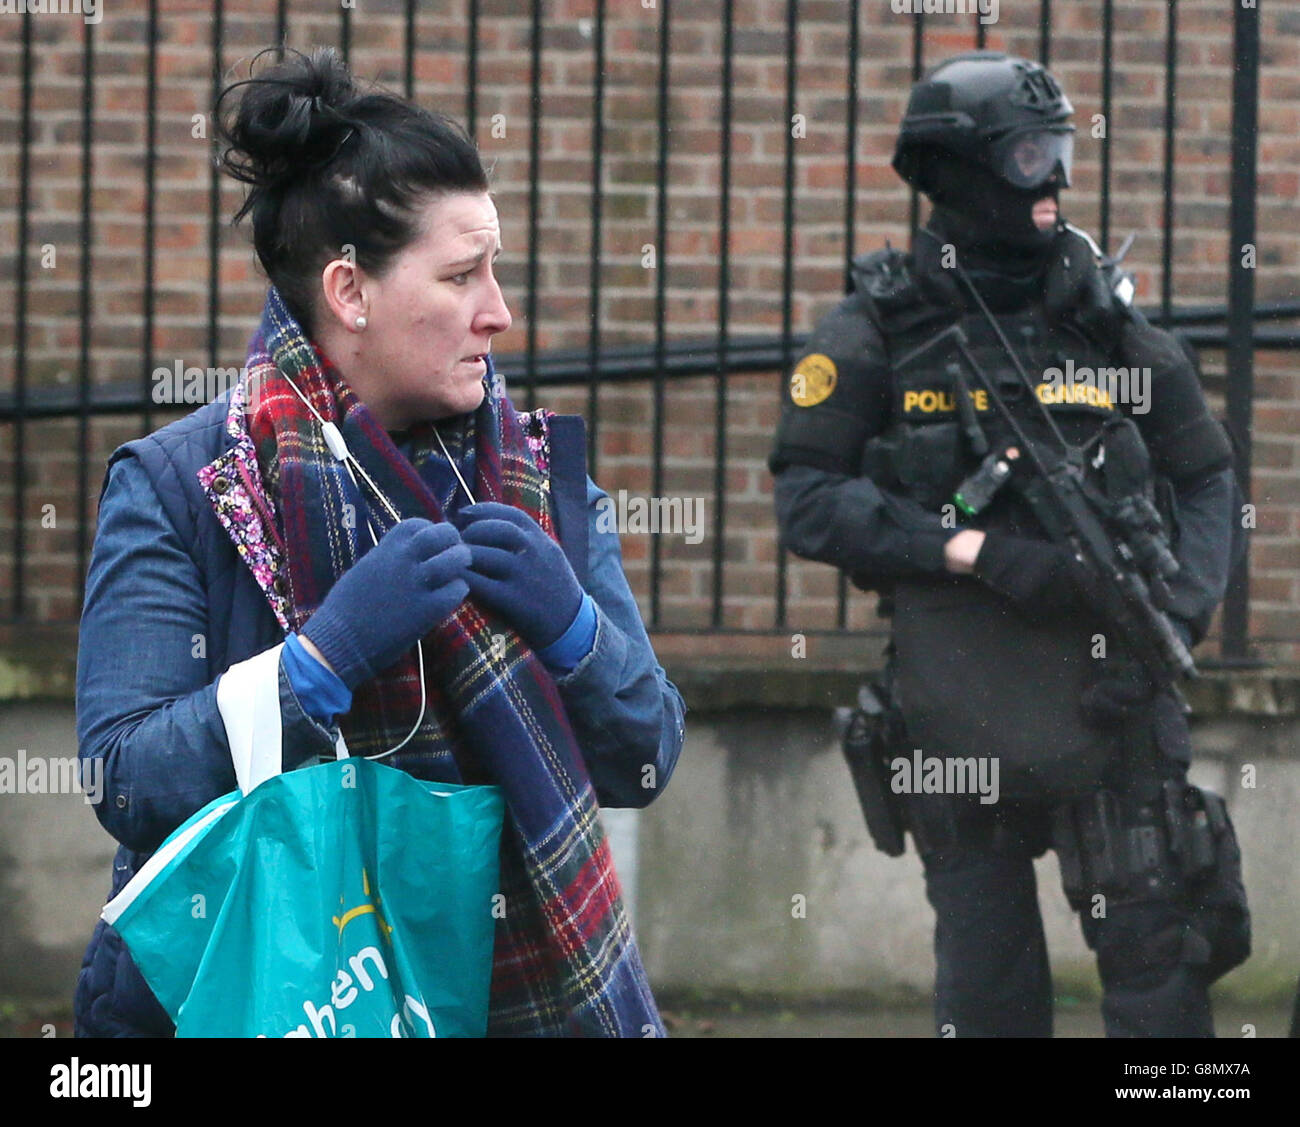 Bewaffneter Gardai von der Truppeneinsatzeinheit auf Patrouille in North Inner City Dublin, da Bandengewalt in vier Tagen zu zwei Morden geführt hat. Stockfoto